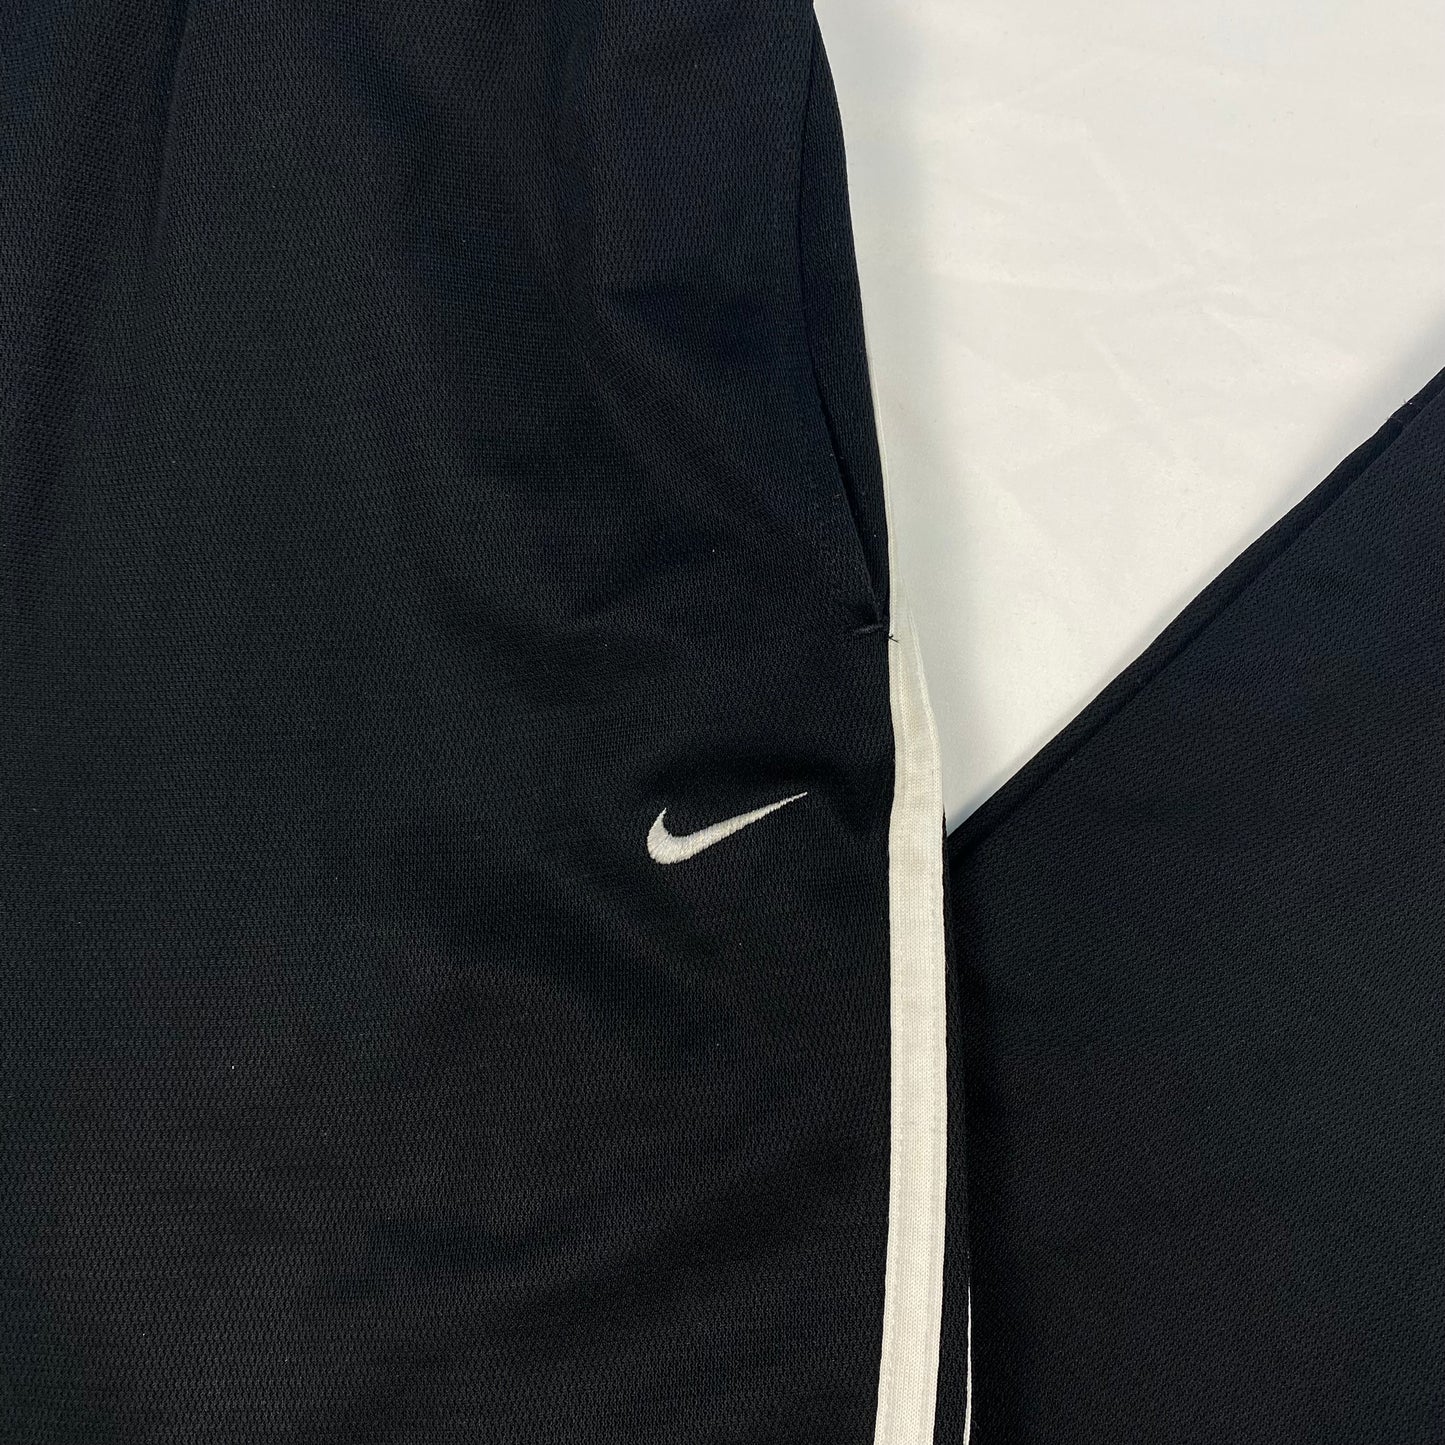 Vintage Nike Sweatpants Stripped (L)